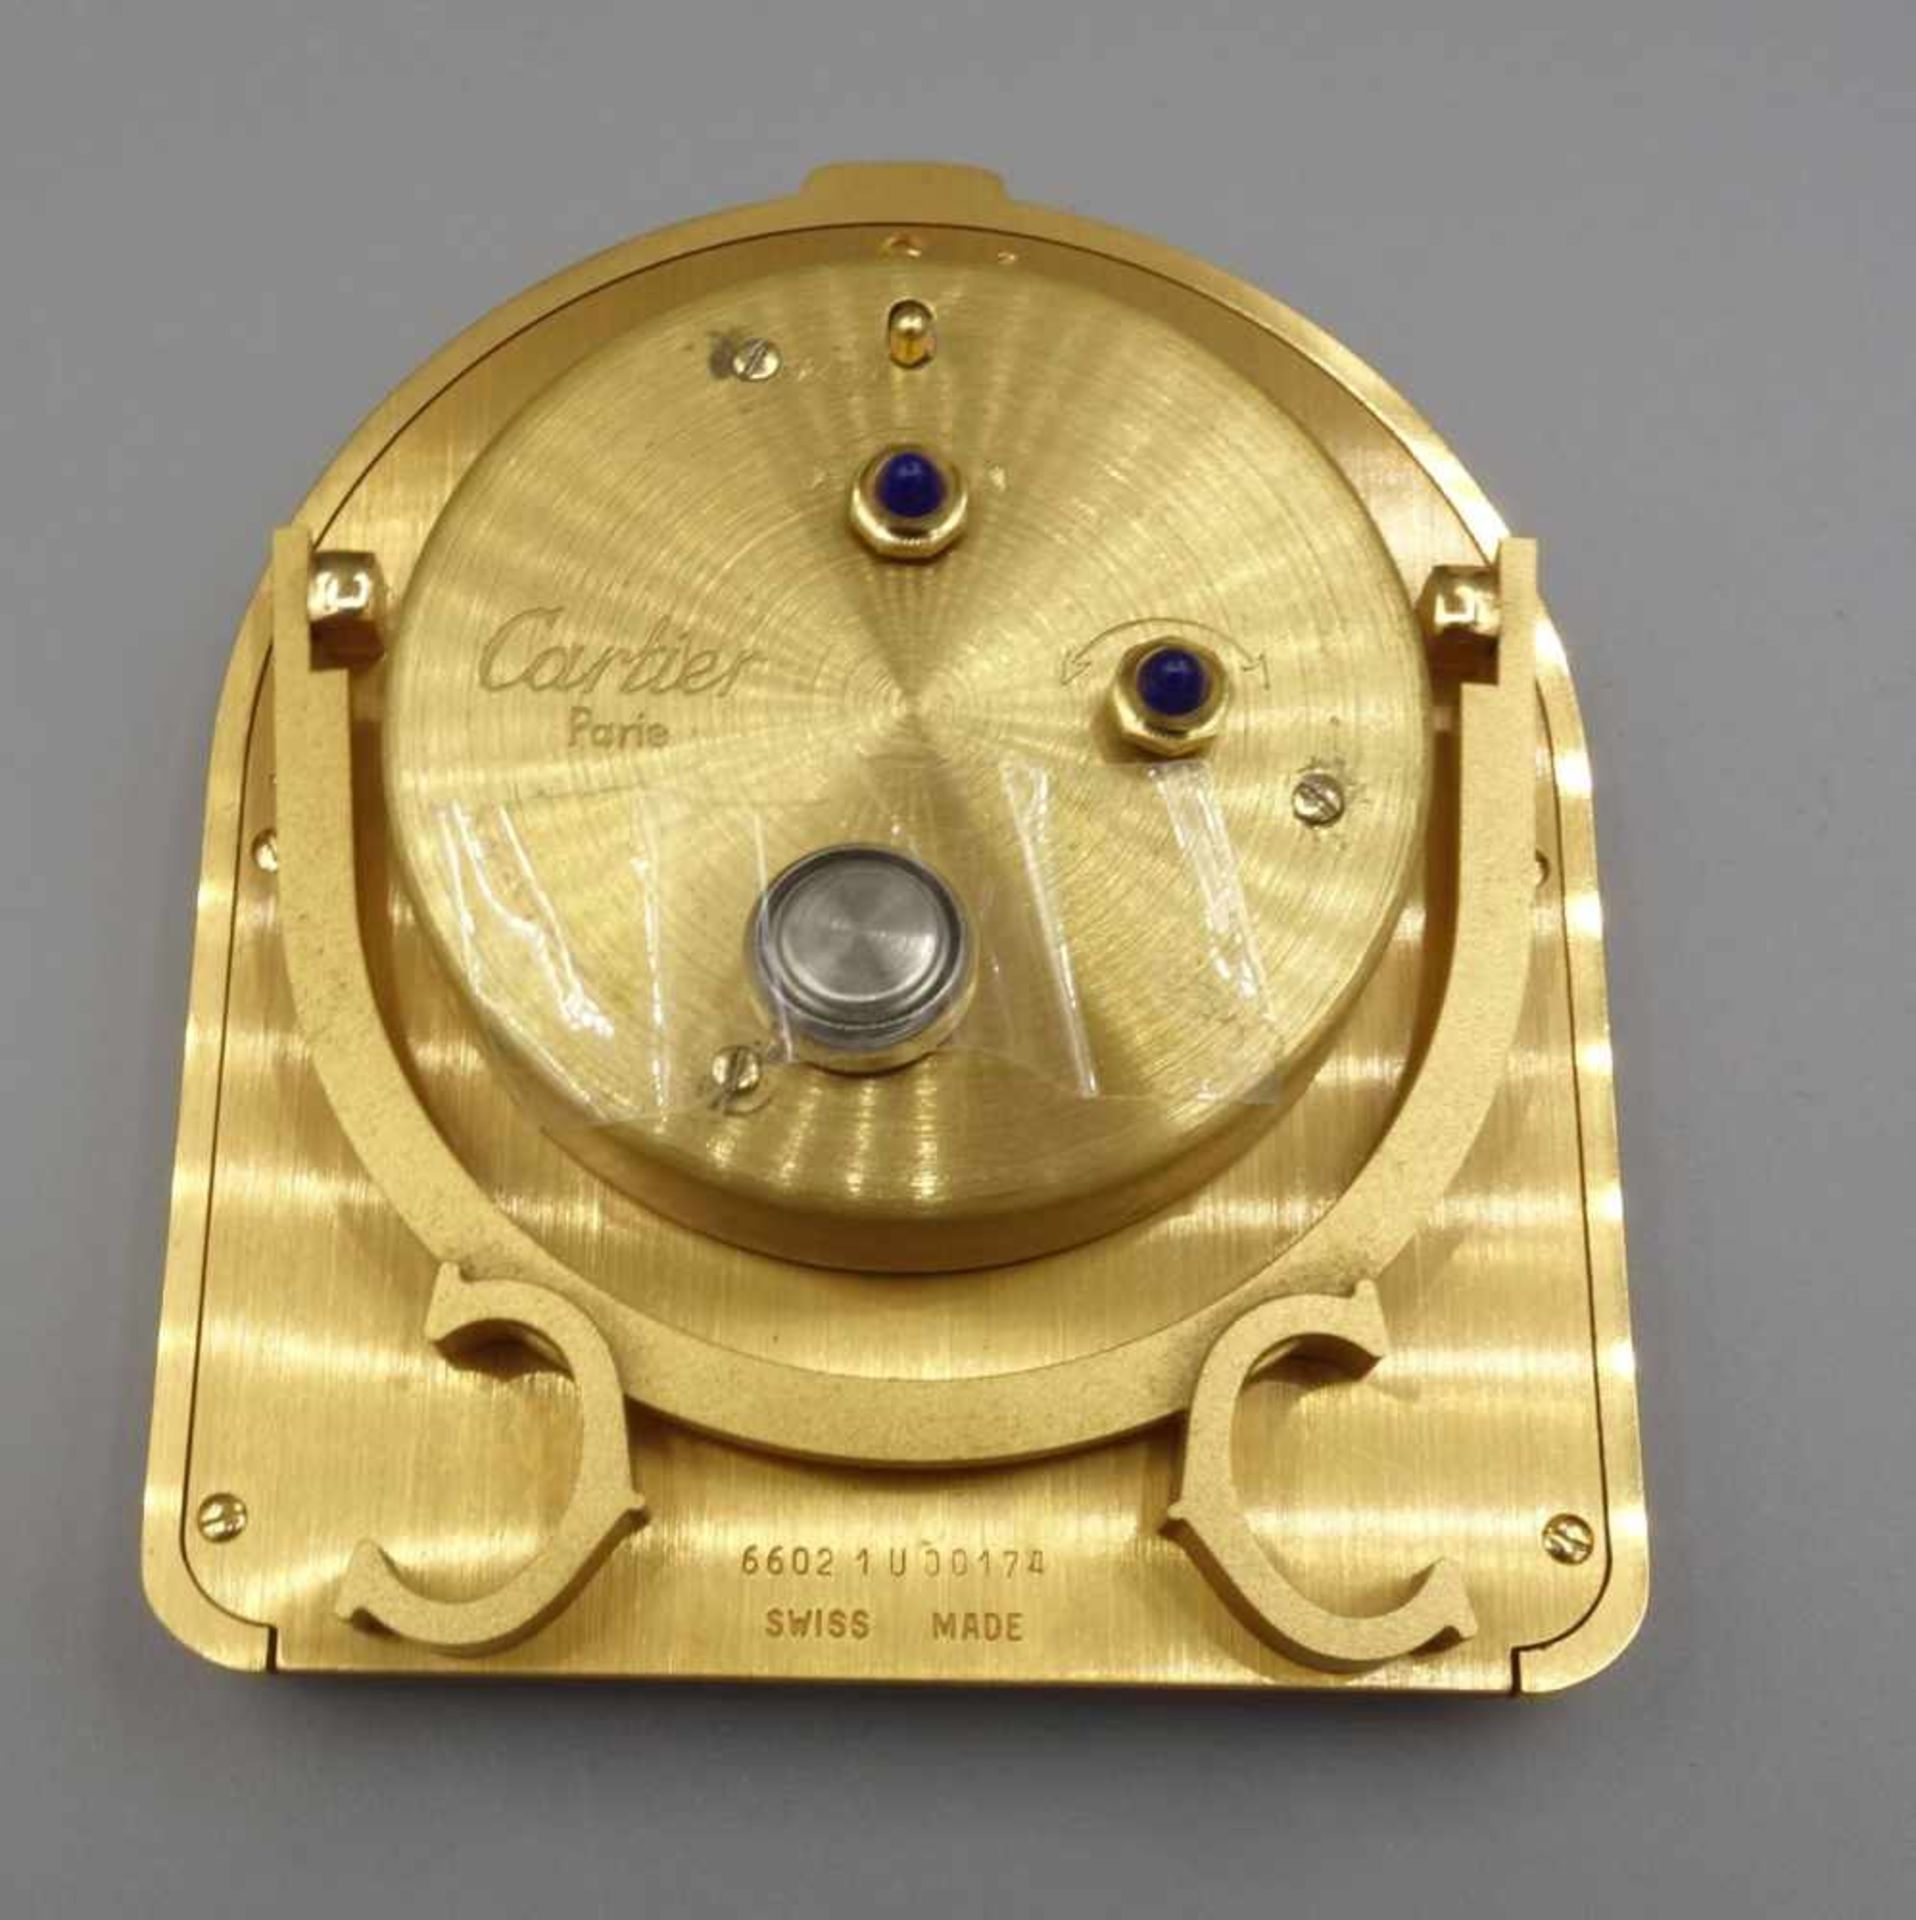 CARTIER-WECKER "ROMANE" / cartier alarm clock, Quartz-Uhr. Manufaktur "must de Cartier"/ Paris. - Bild 3 aus 6